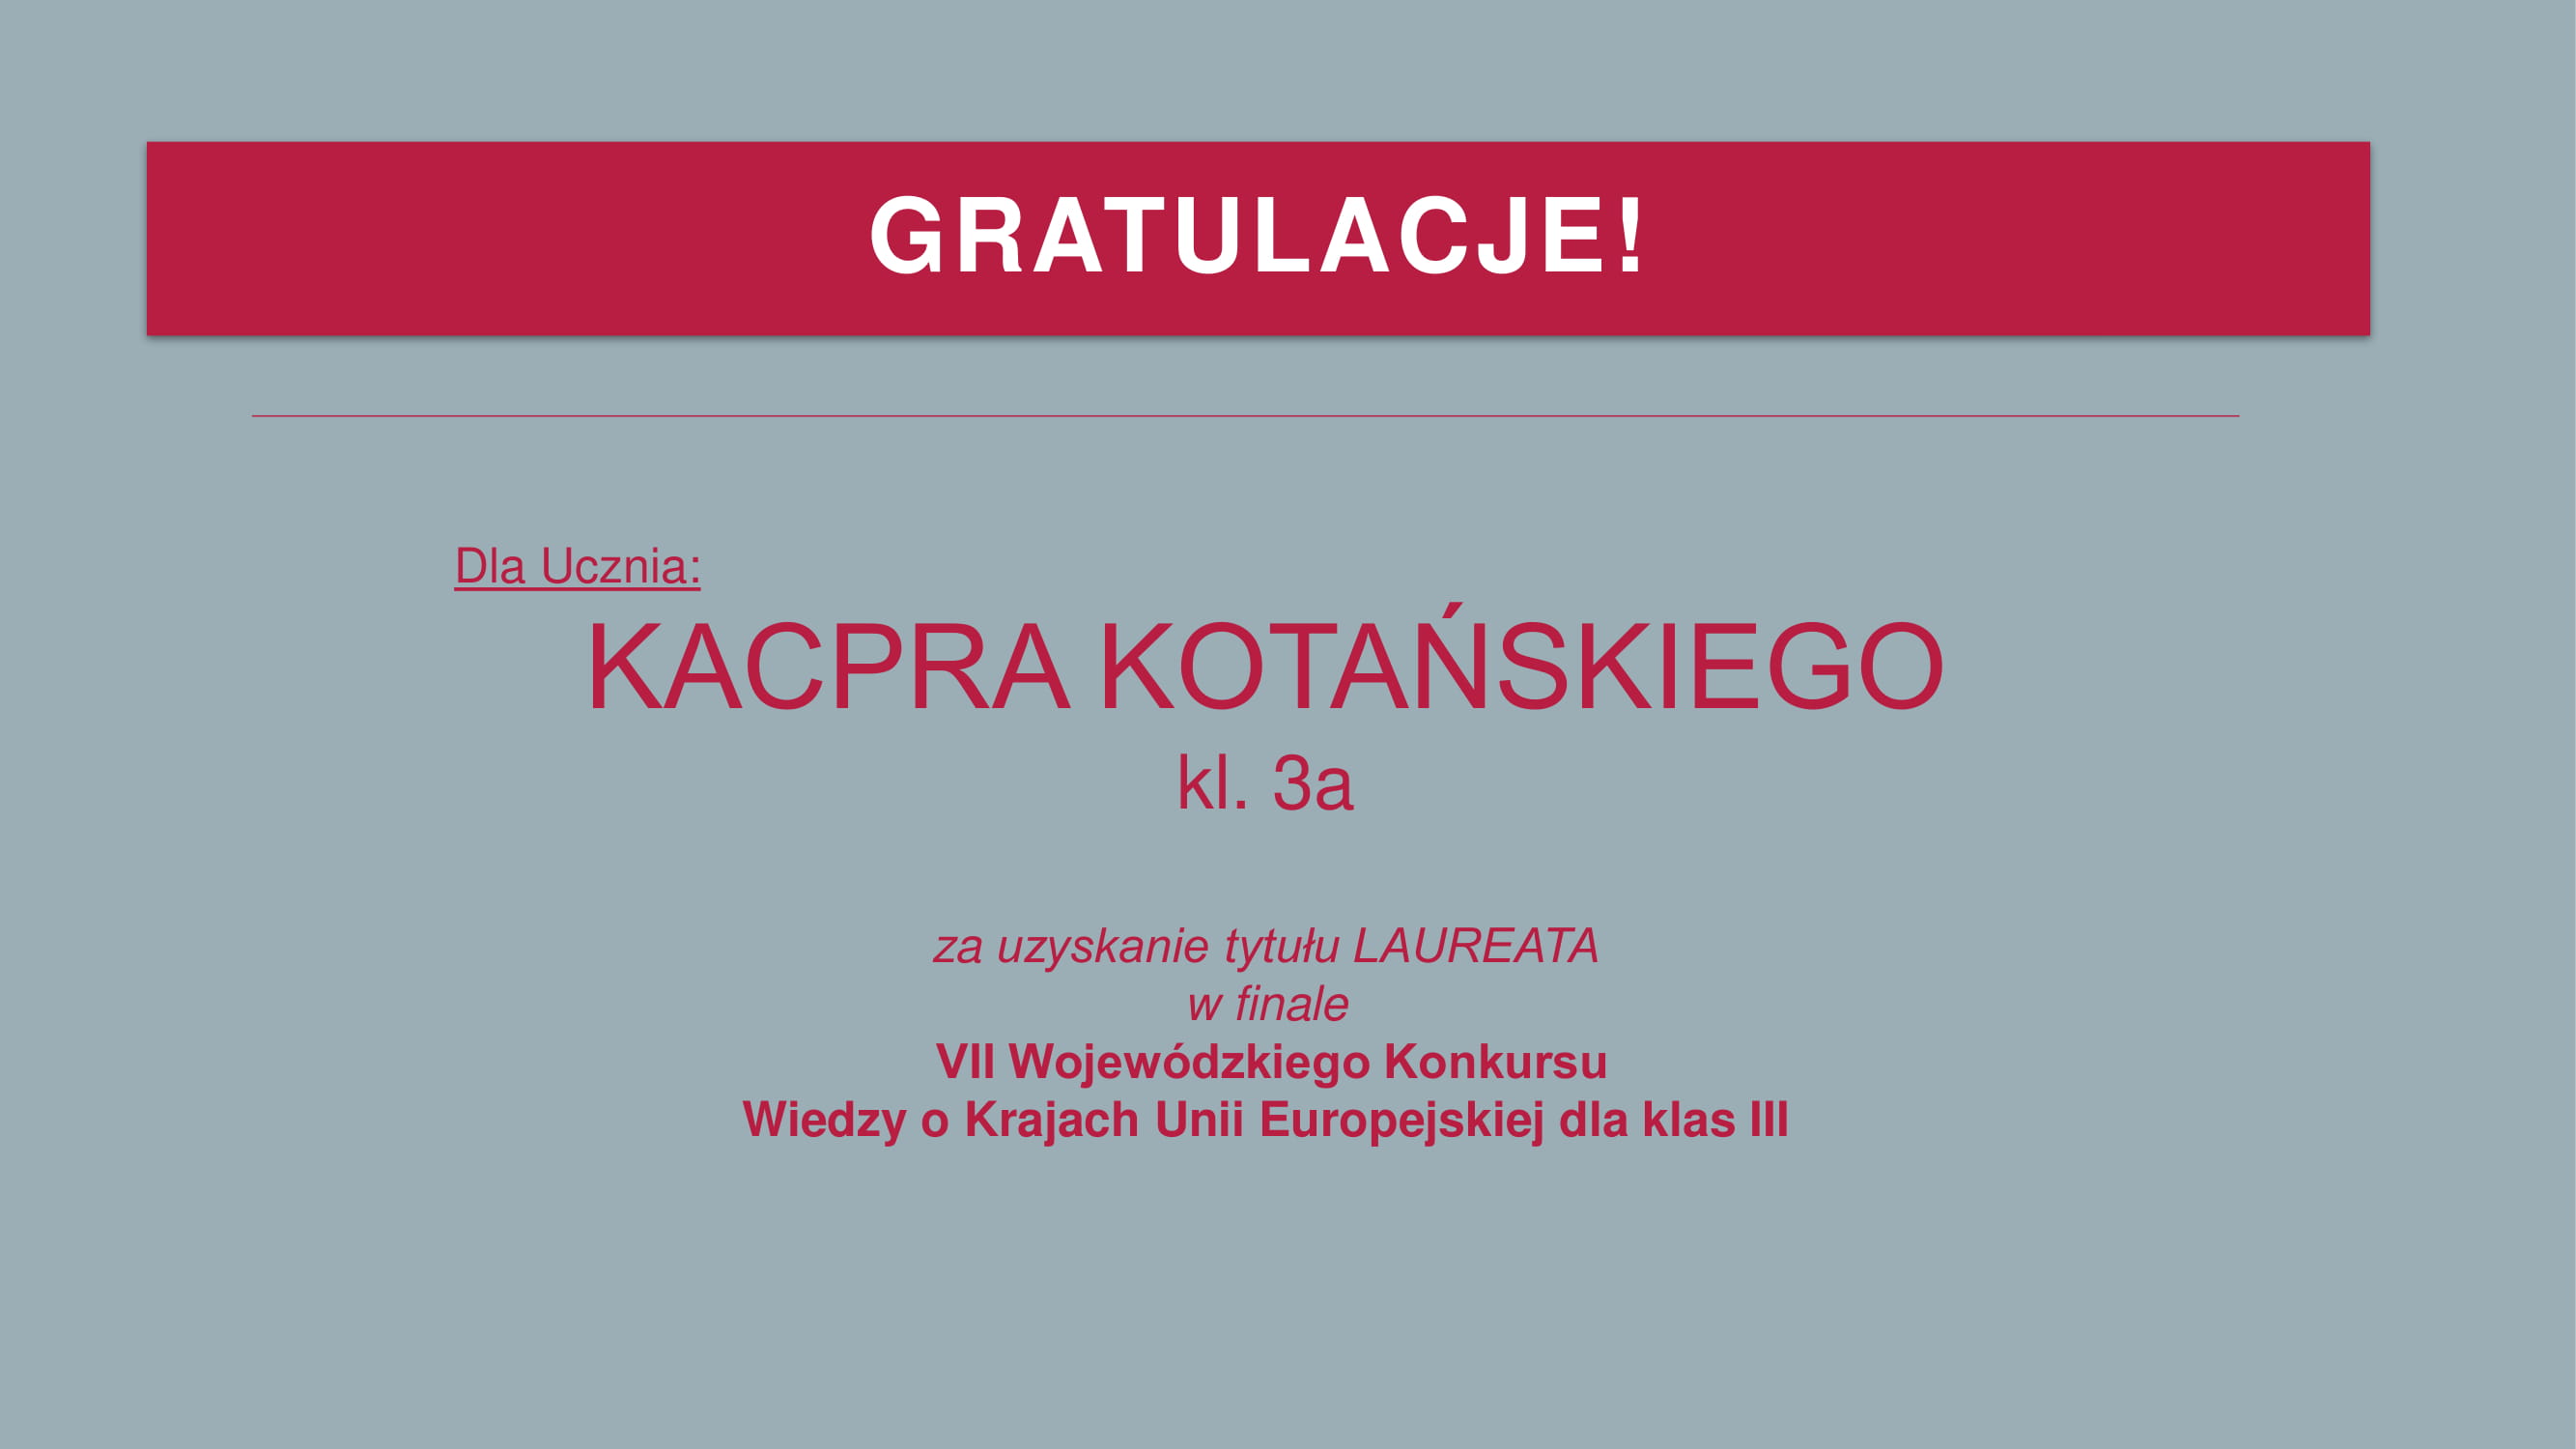 gratulacje_kacper_kotanski.jpg